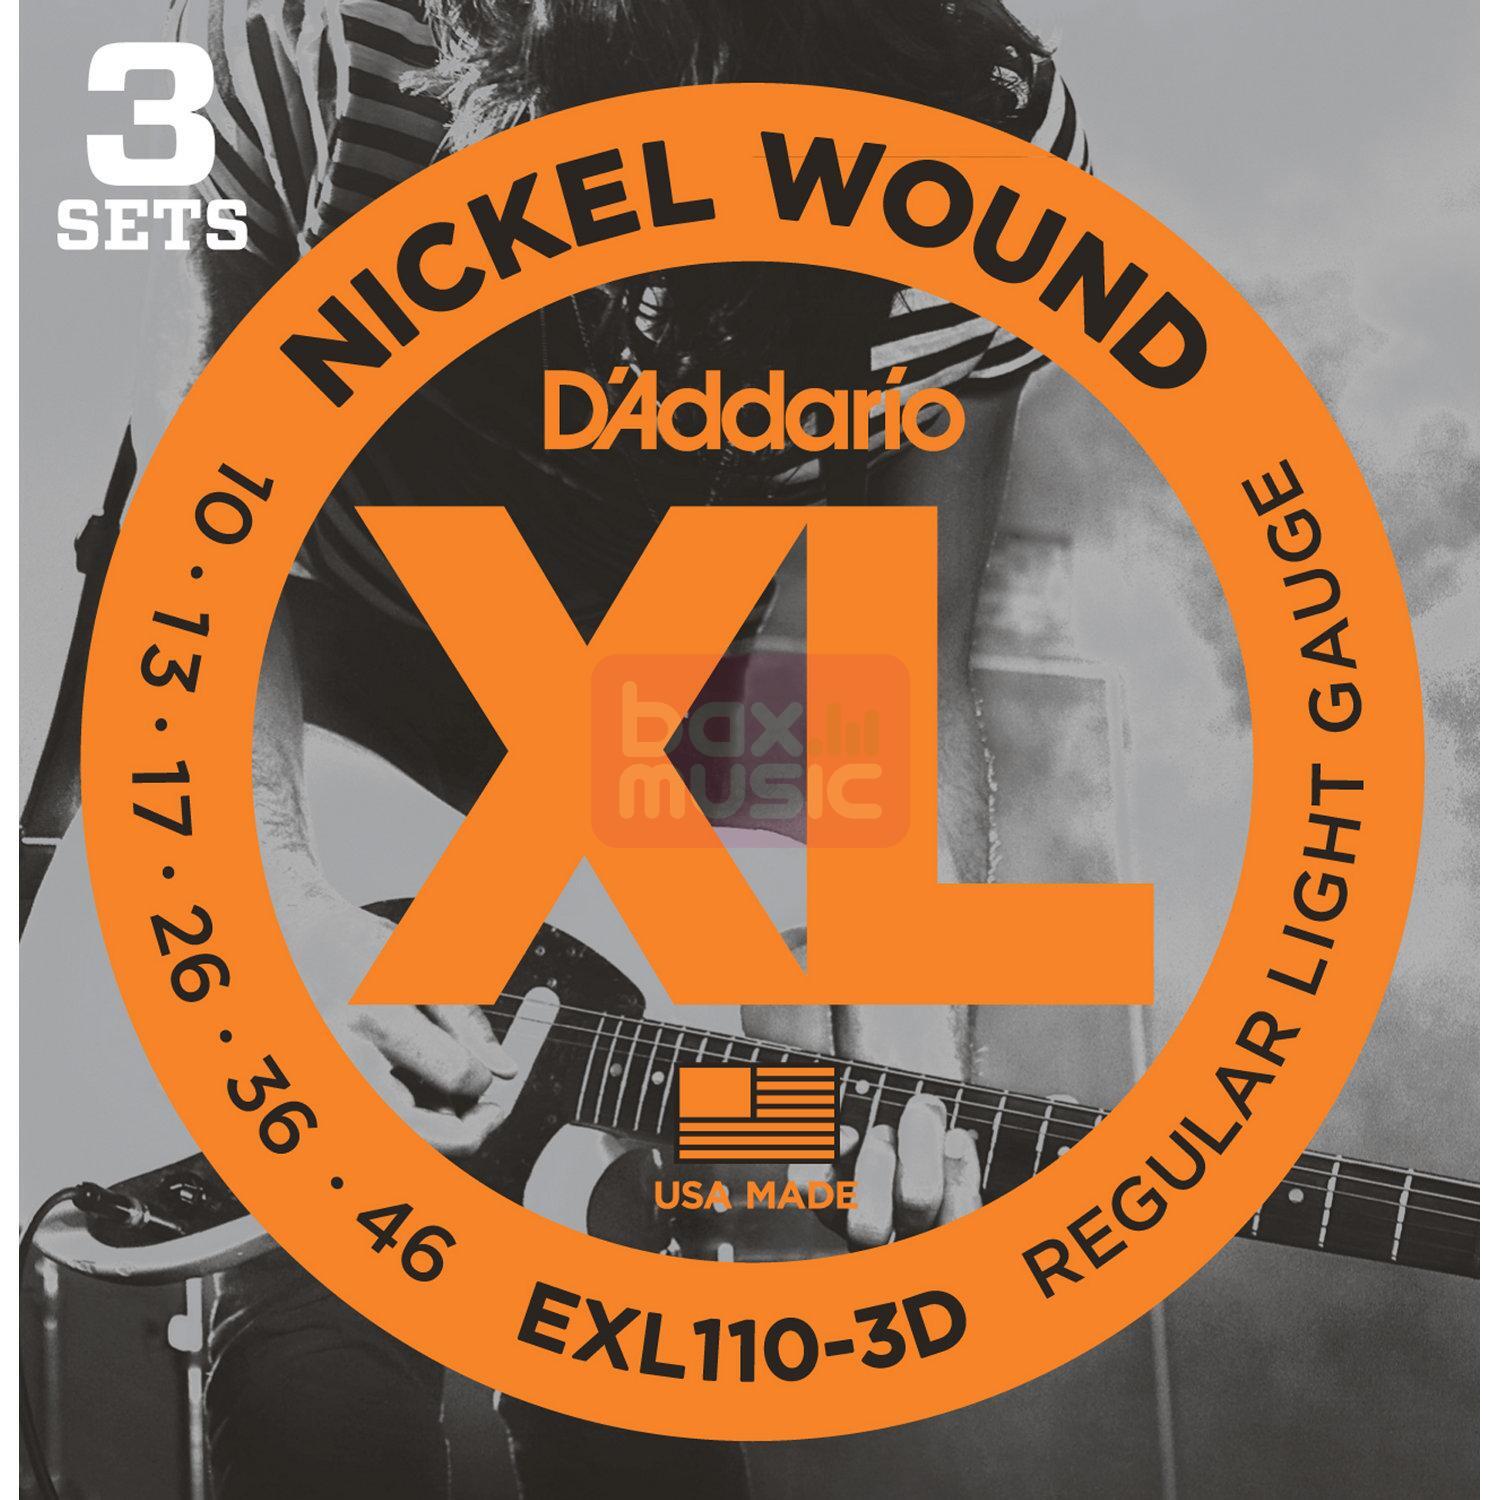 D'ADDARIO Daddario EXL110-3D snaren voor elektrische gitaar 3 sets